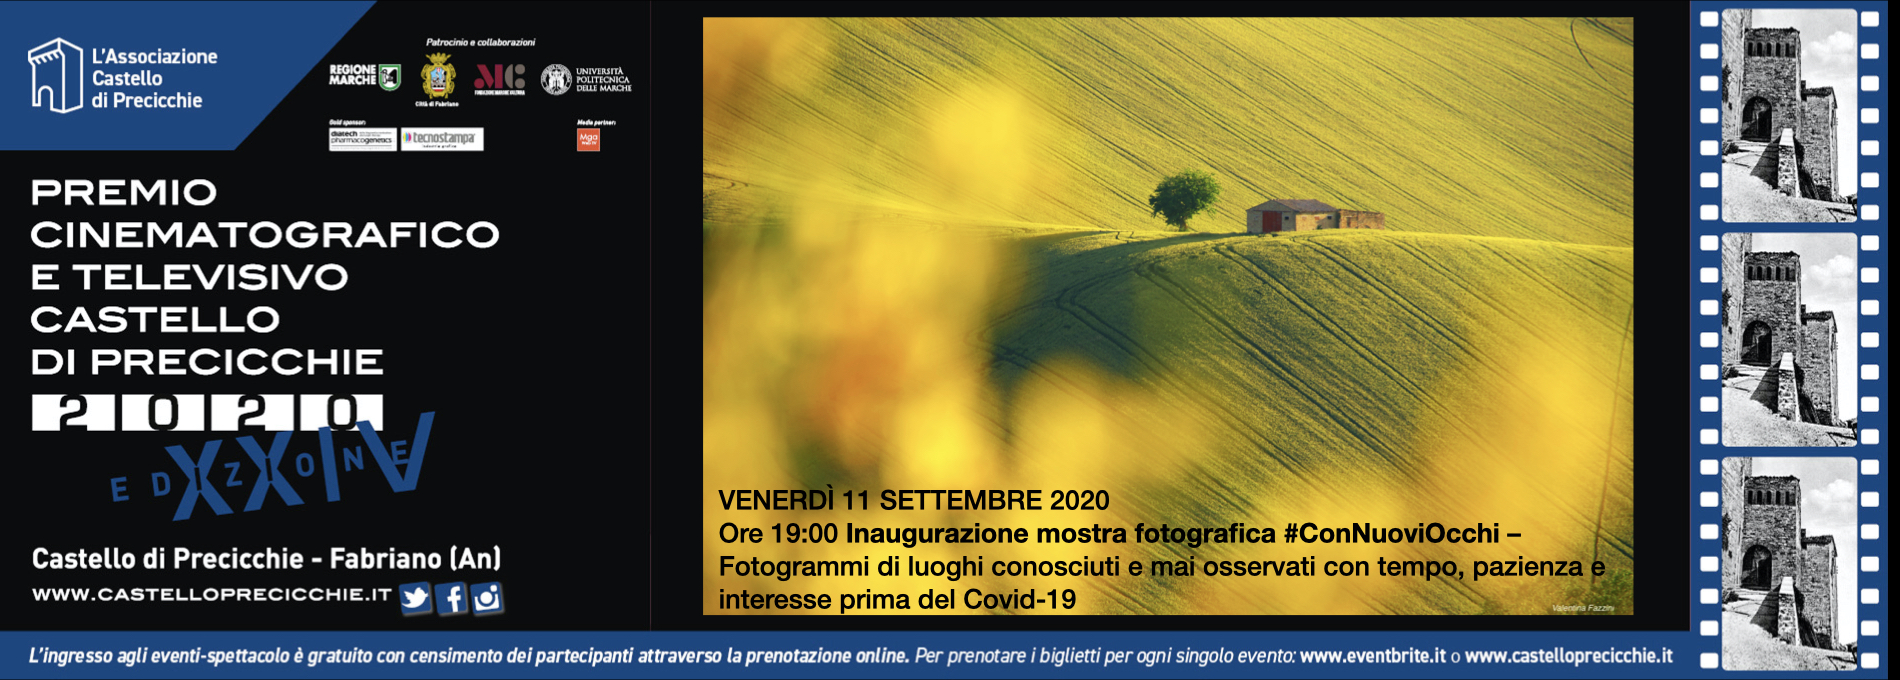 Inaugurazione mostra contest fotografico #ConNuoviOcchi